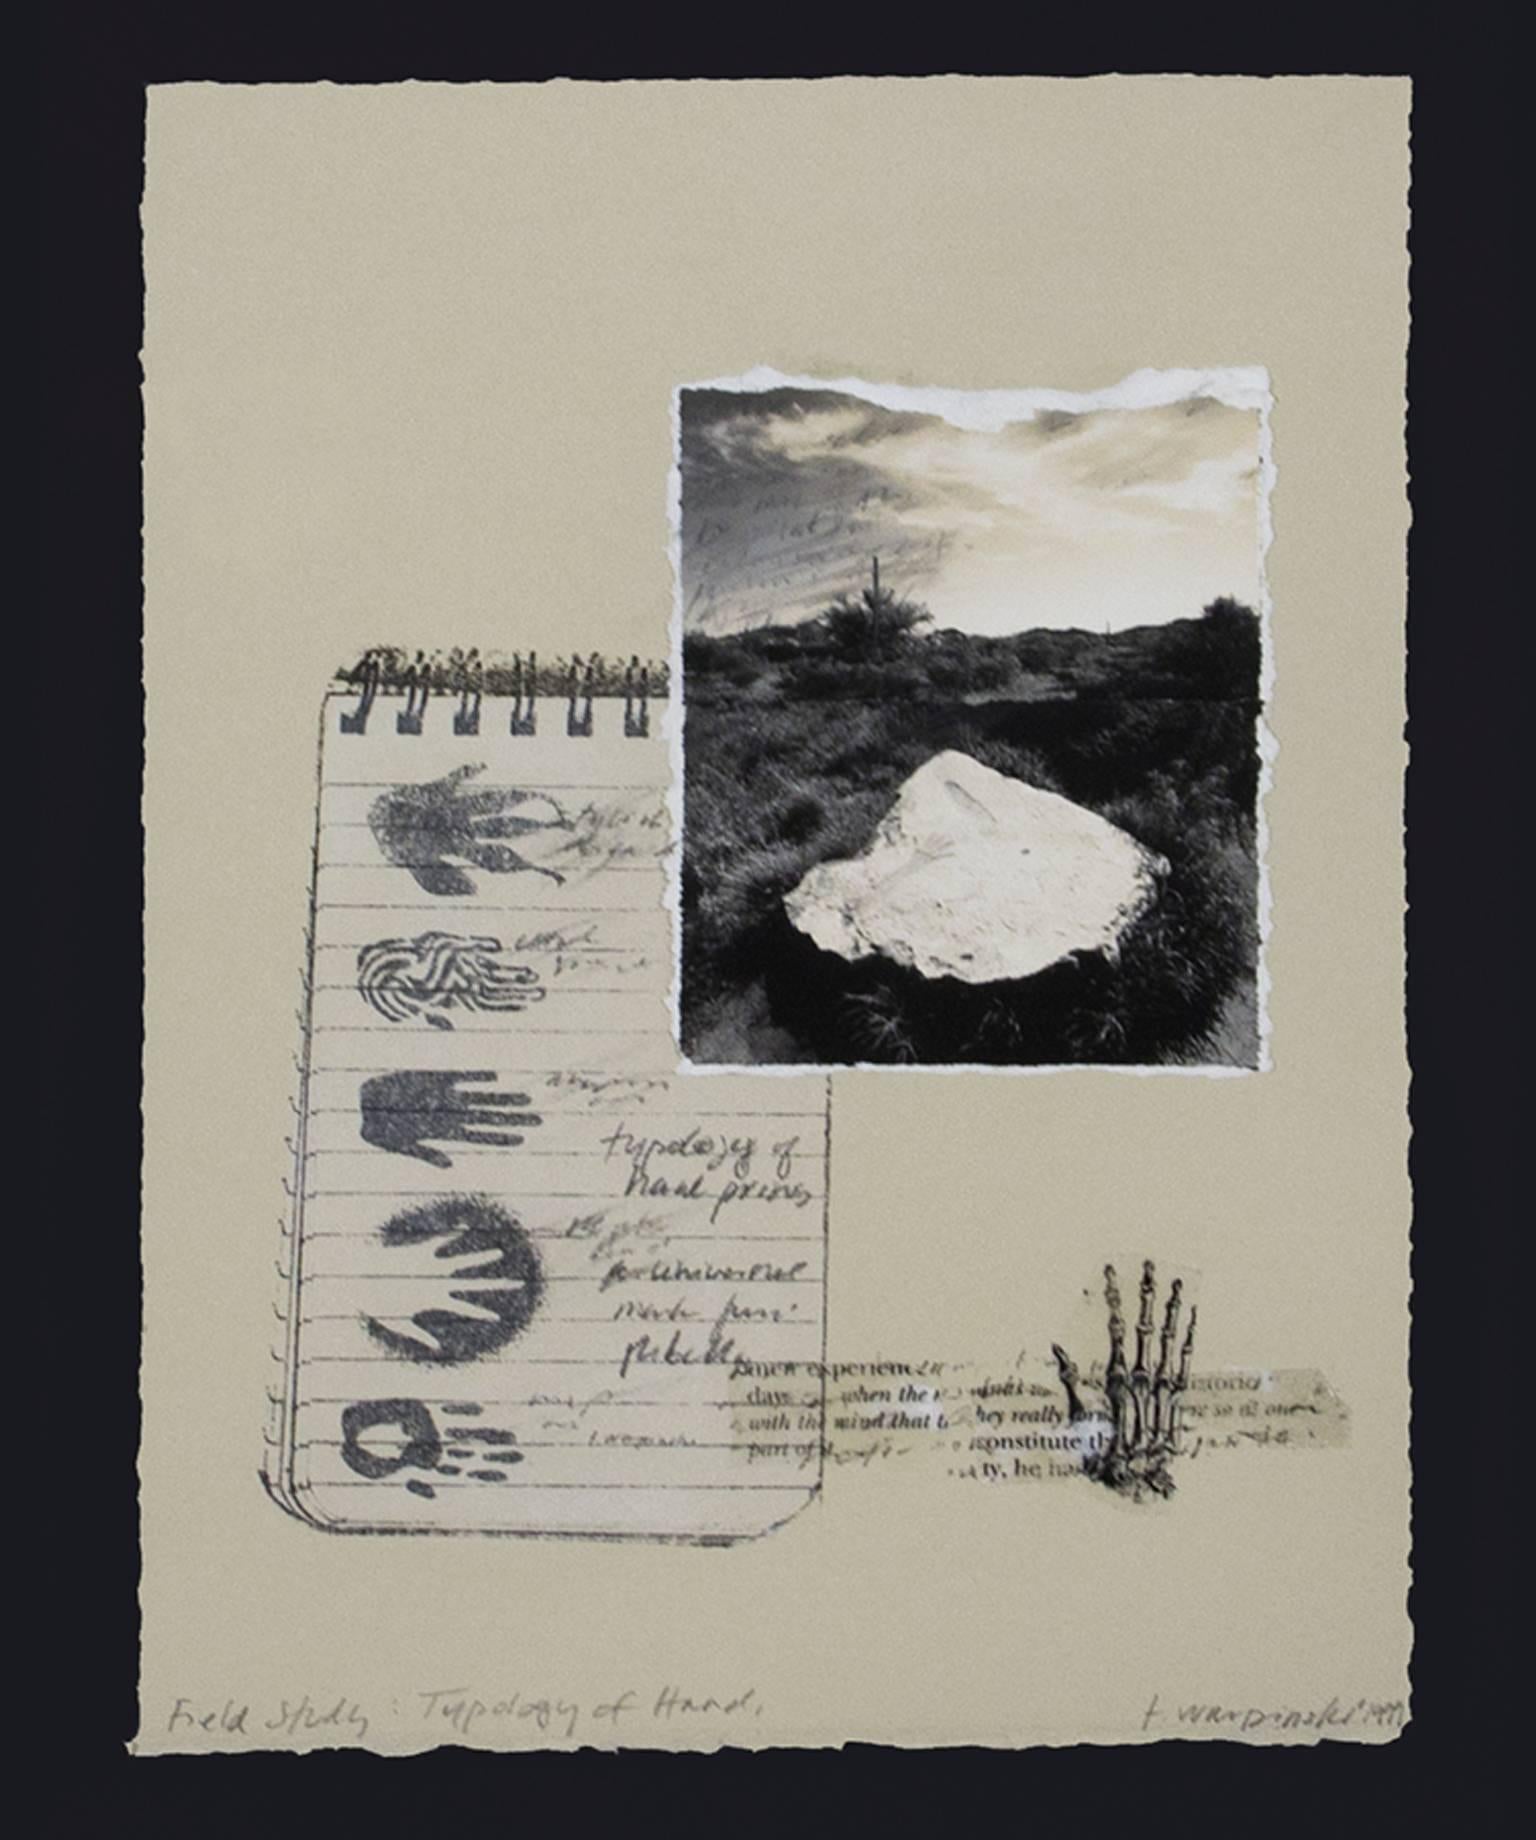 "Field Study - Typology of Hand" ist eine Mischtechnikarbeit von Terri Warpinski, die Fotos, Zeichnungen und Fragmente von Notiz- und Skizzenbuchpapier verwendet. Der Künstler signierte das Werk unten rechts und betitelte es unten links. 

9 1/2" x